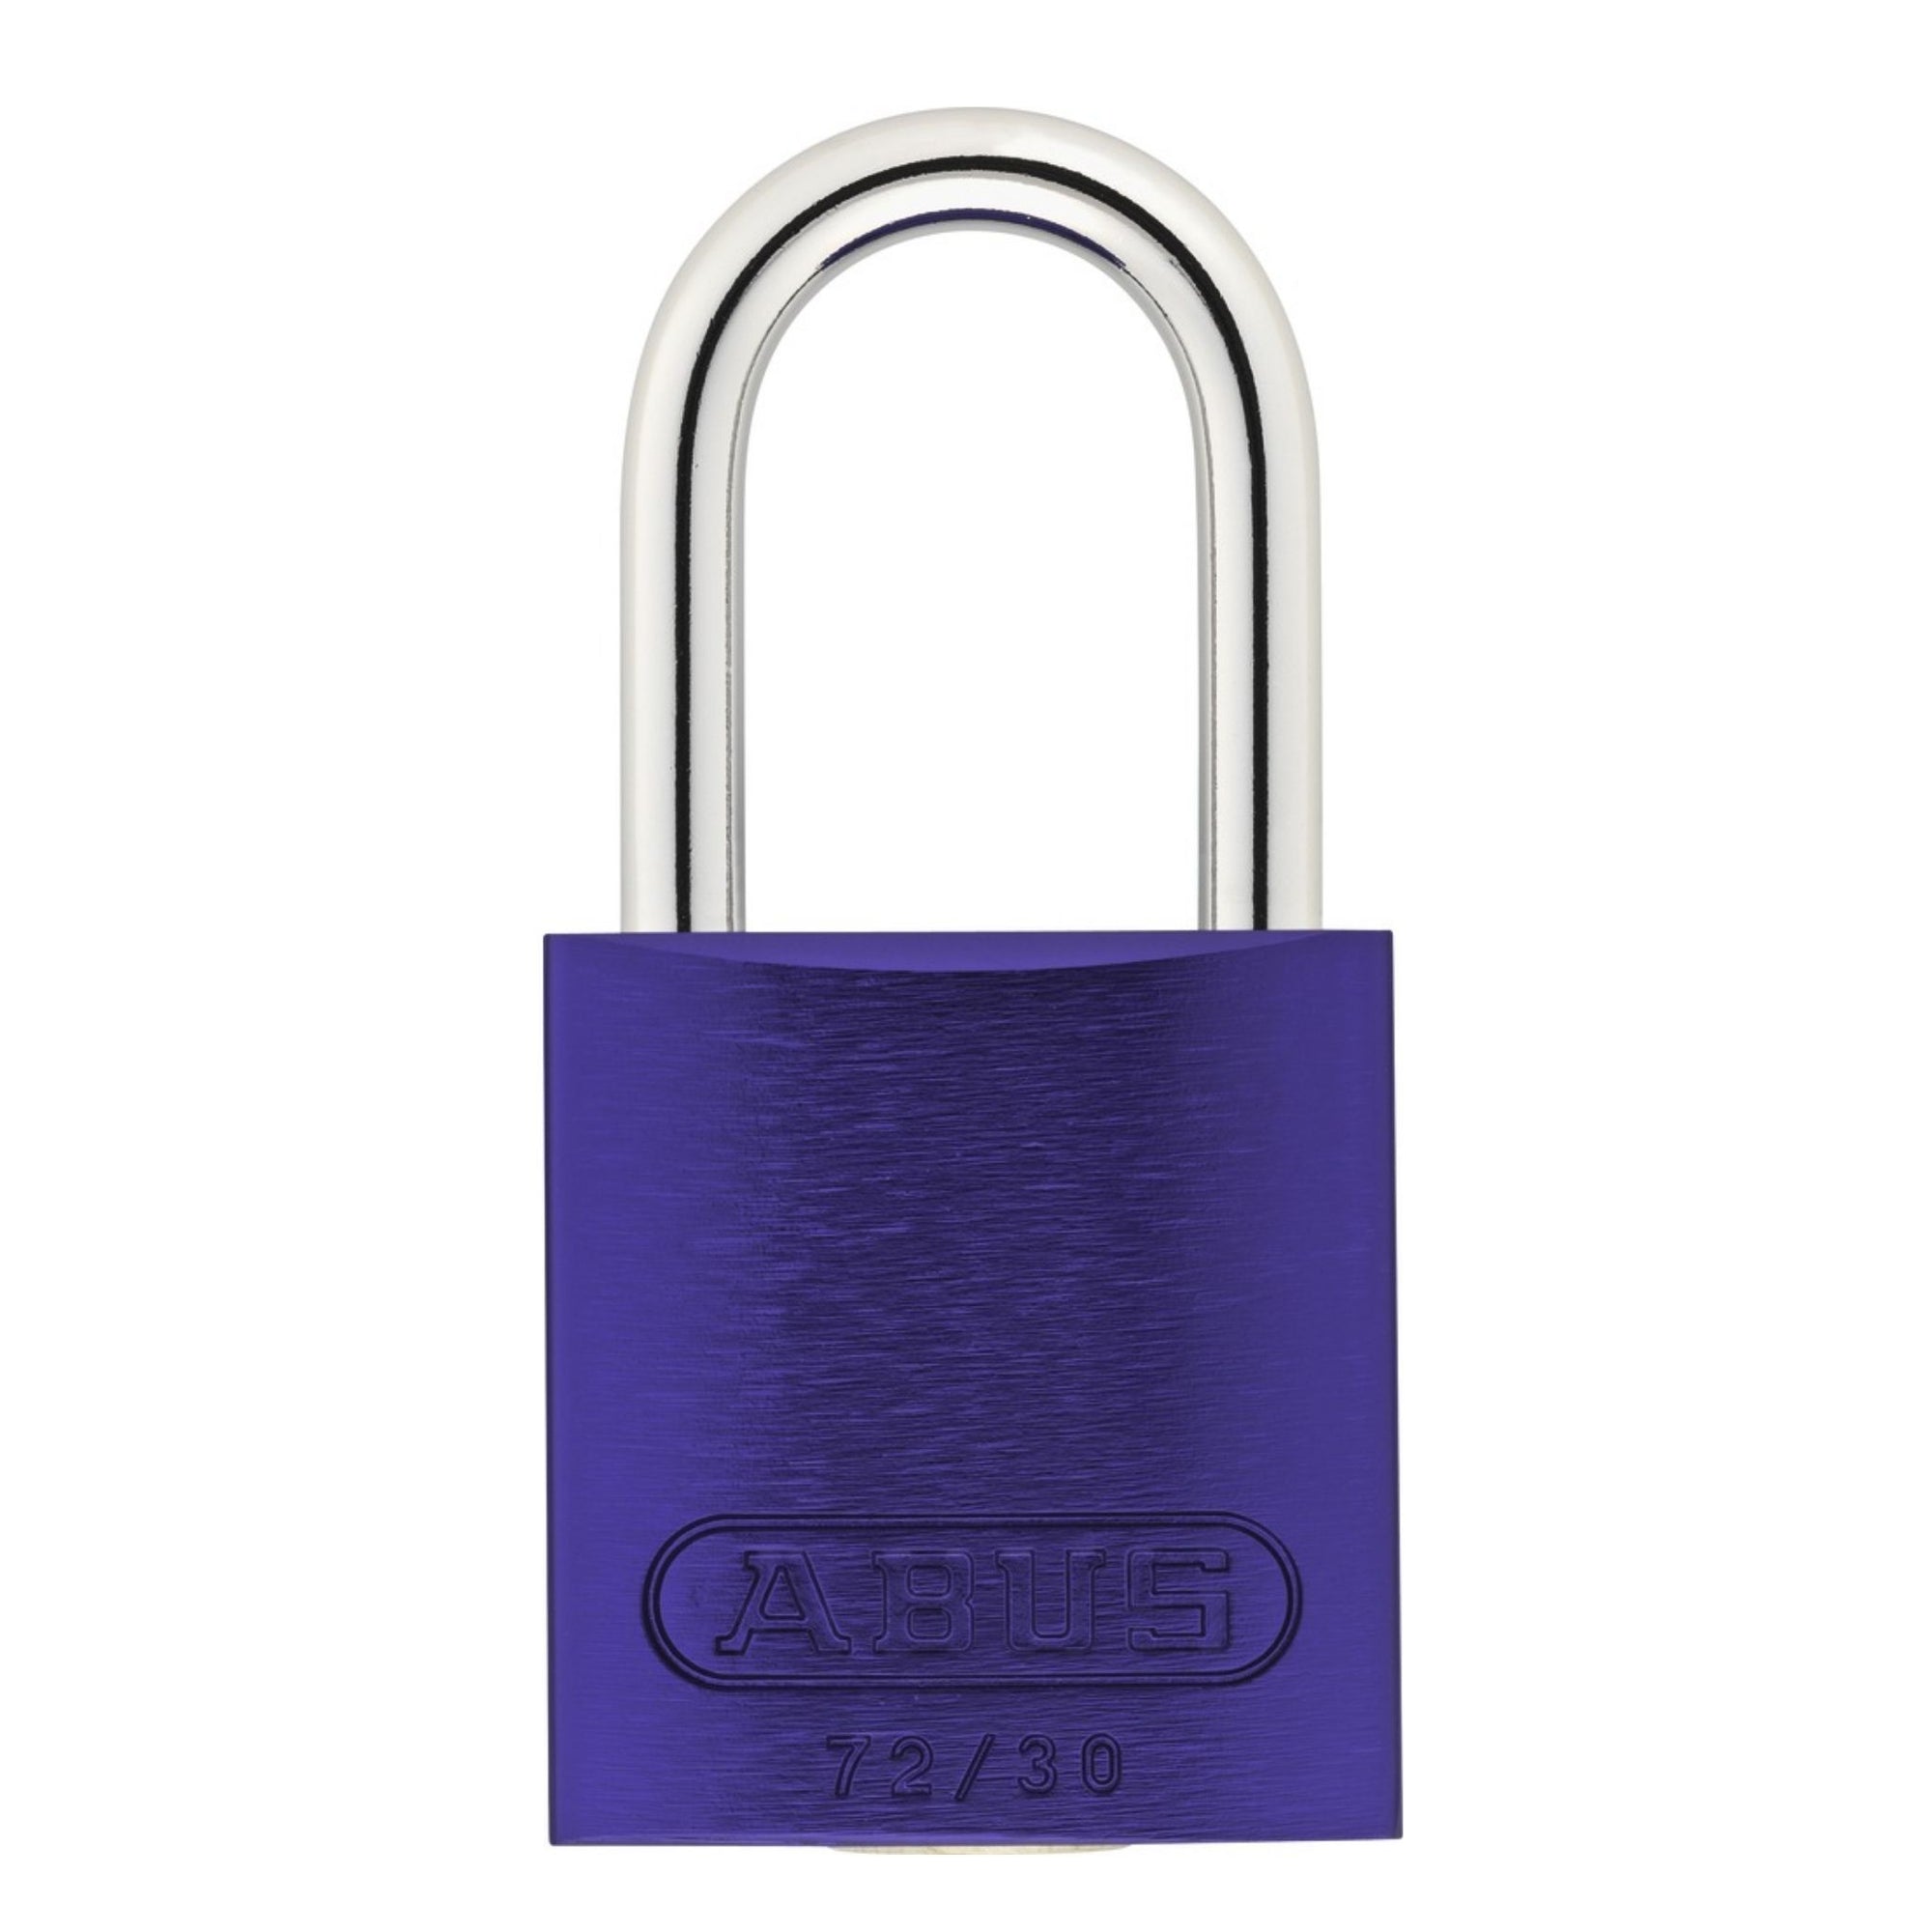 Abus 72/30 KA TT00036 Purple Aluminum Safety Padlock Keyed Alike Lockout Tagout Locks - The Lock Source